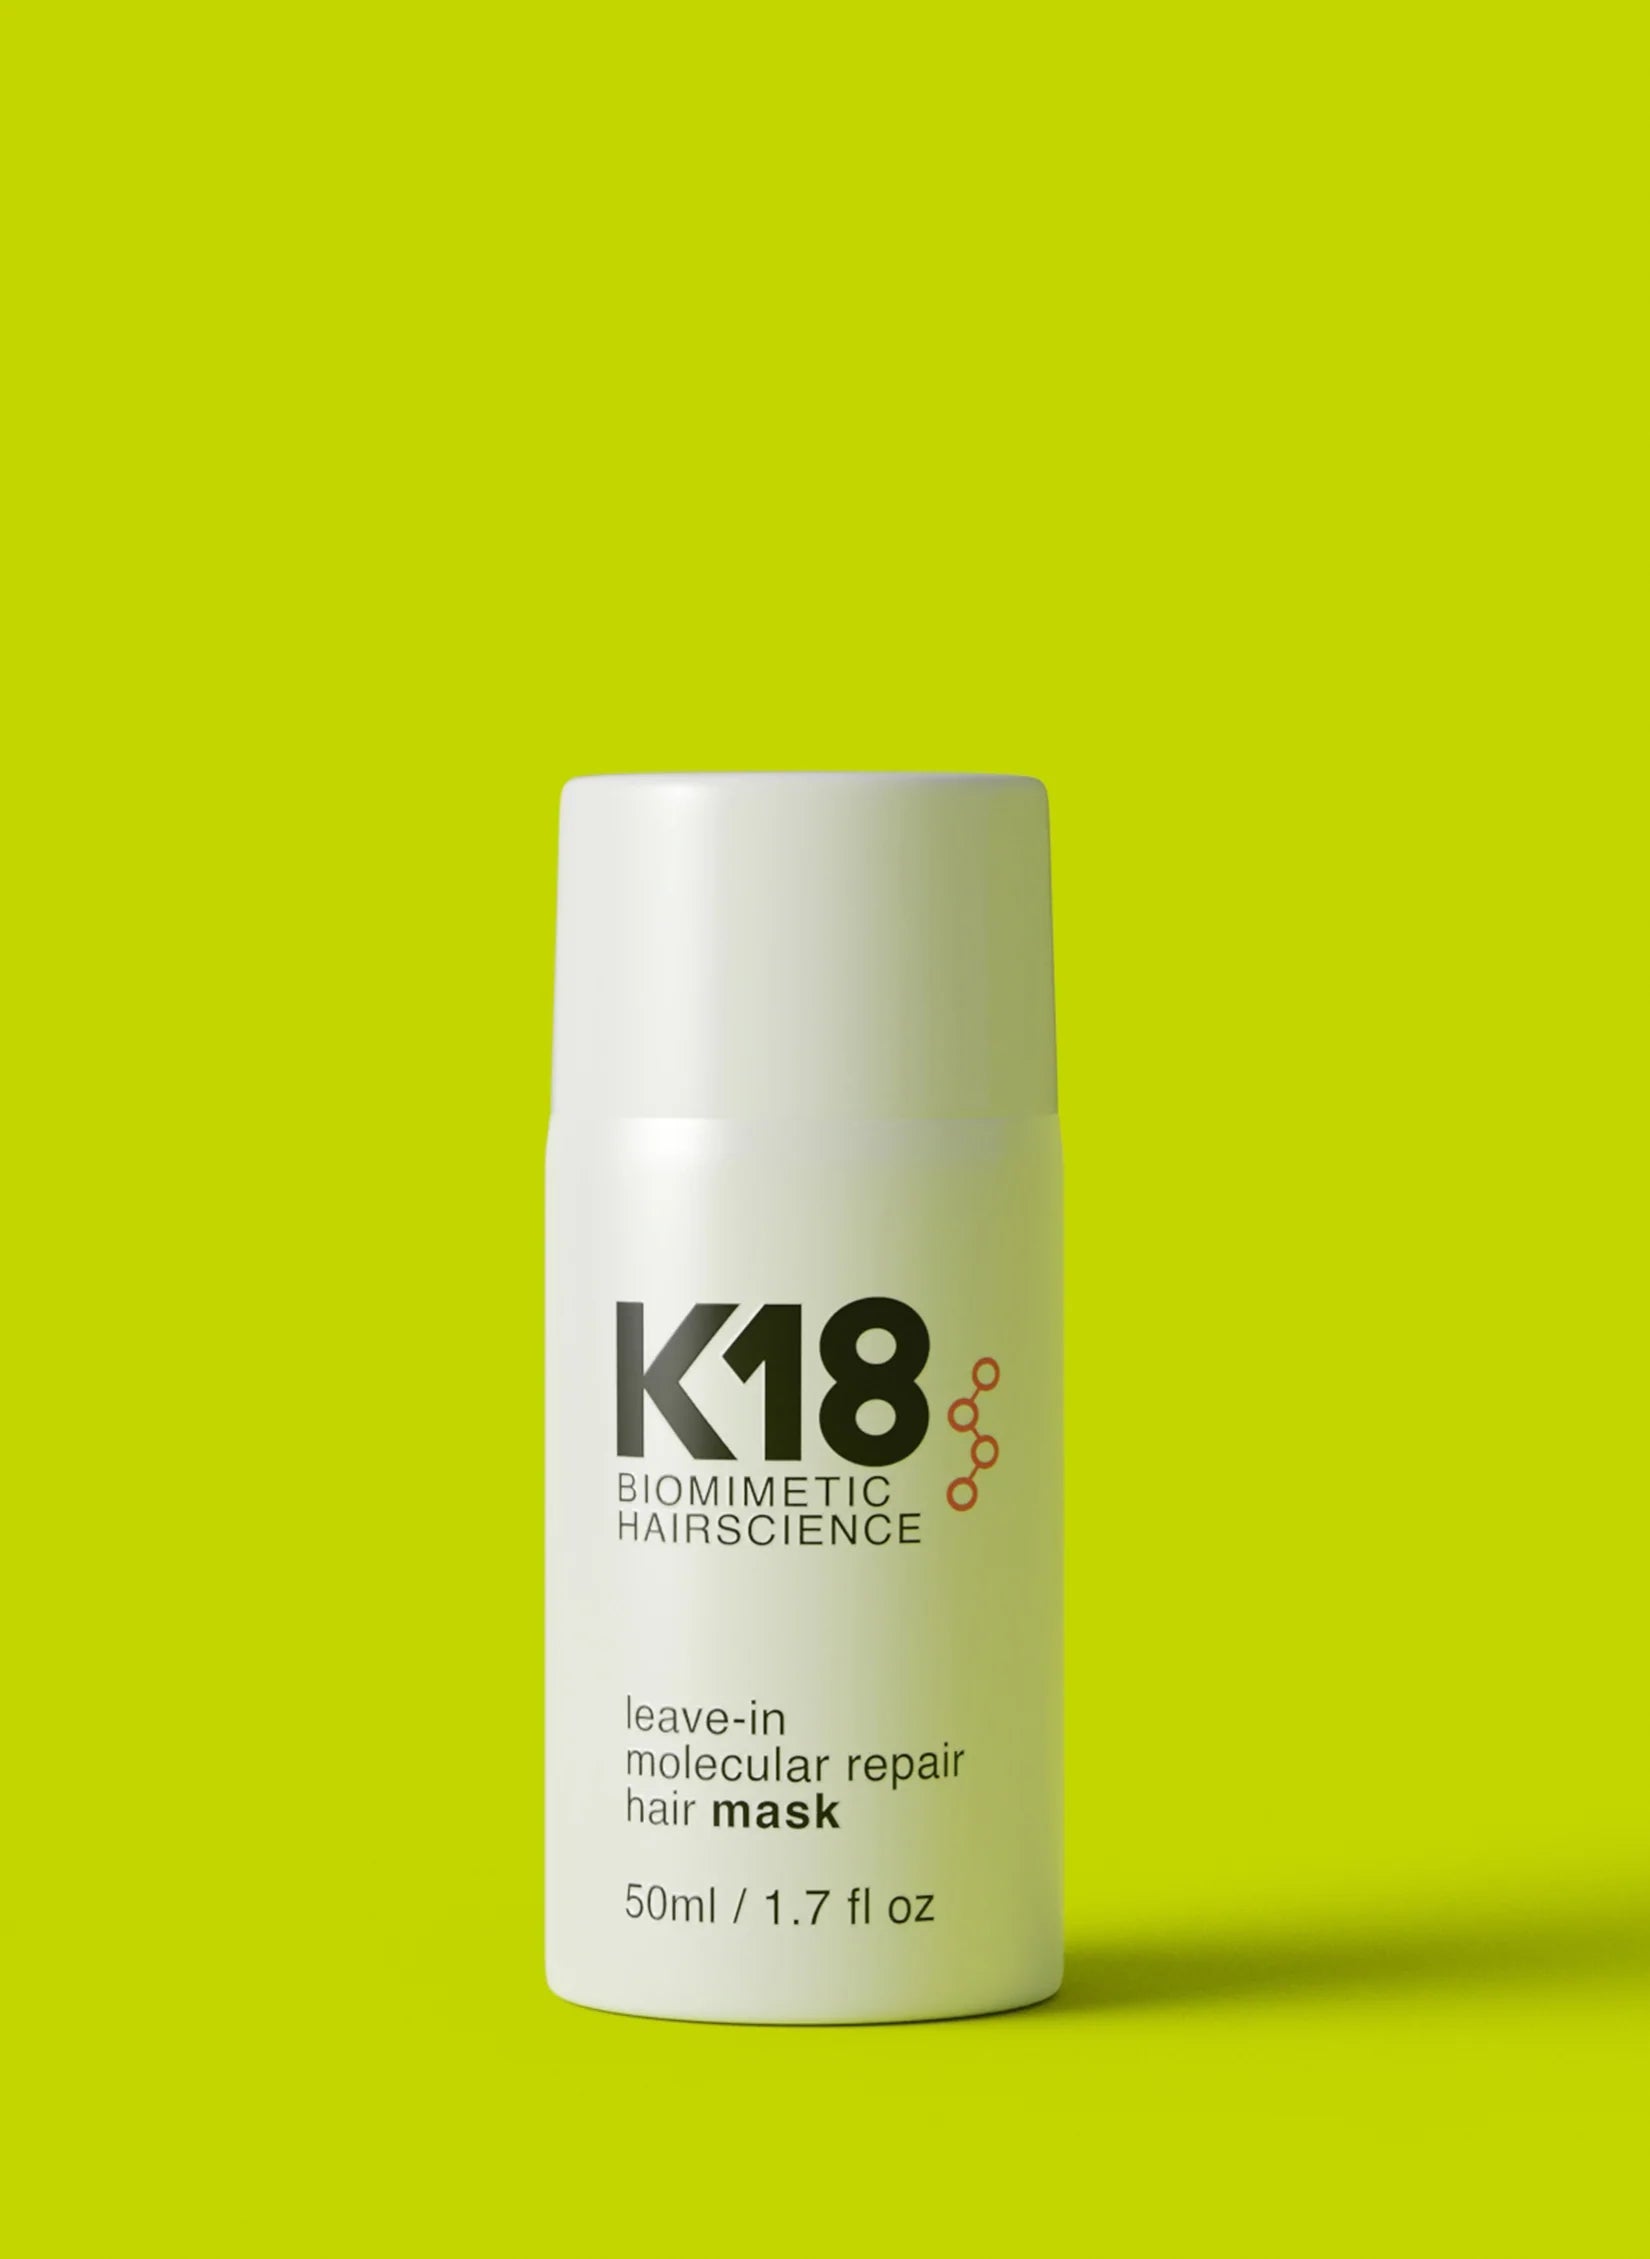 Leave-In Molecular Repair Hair Maskby K18